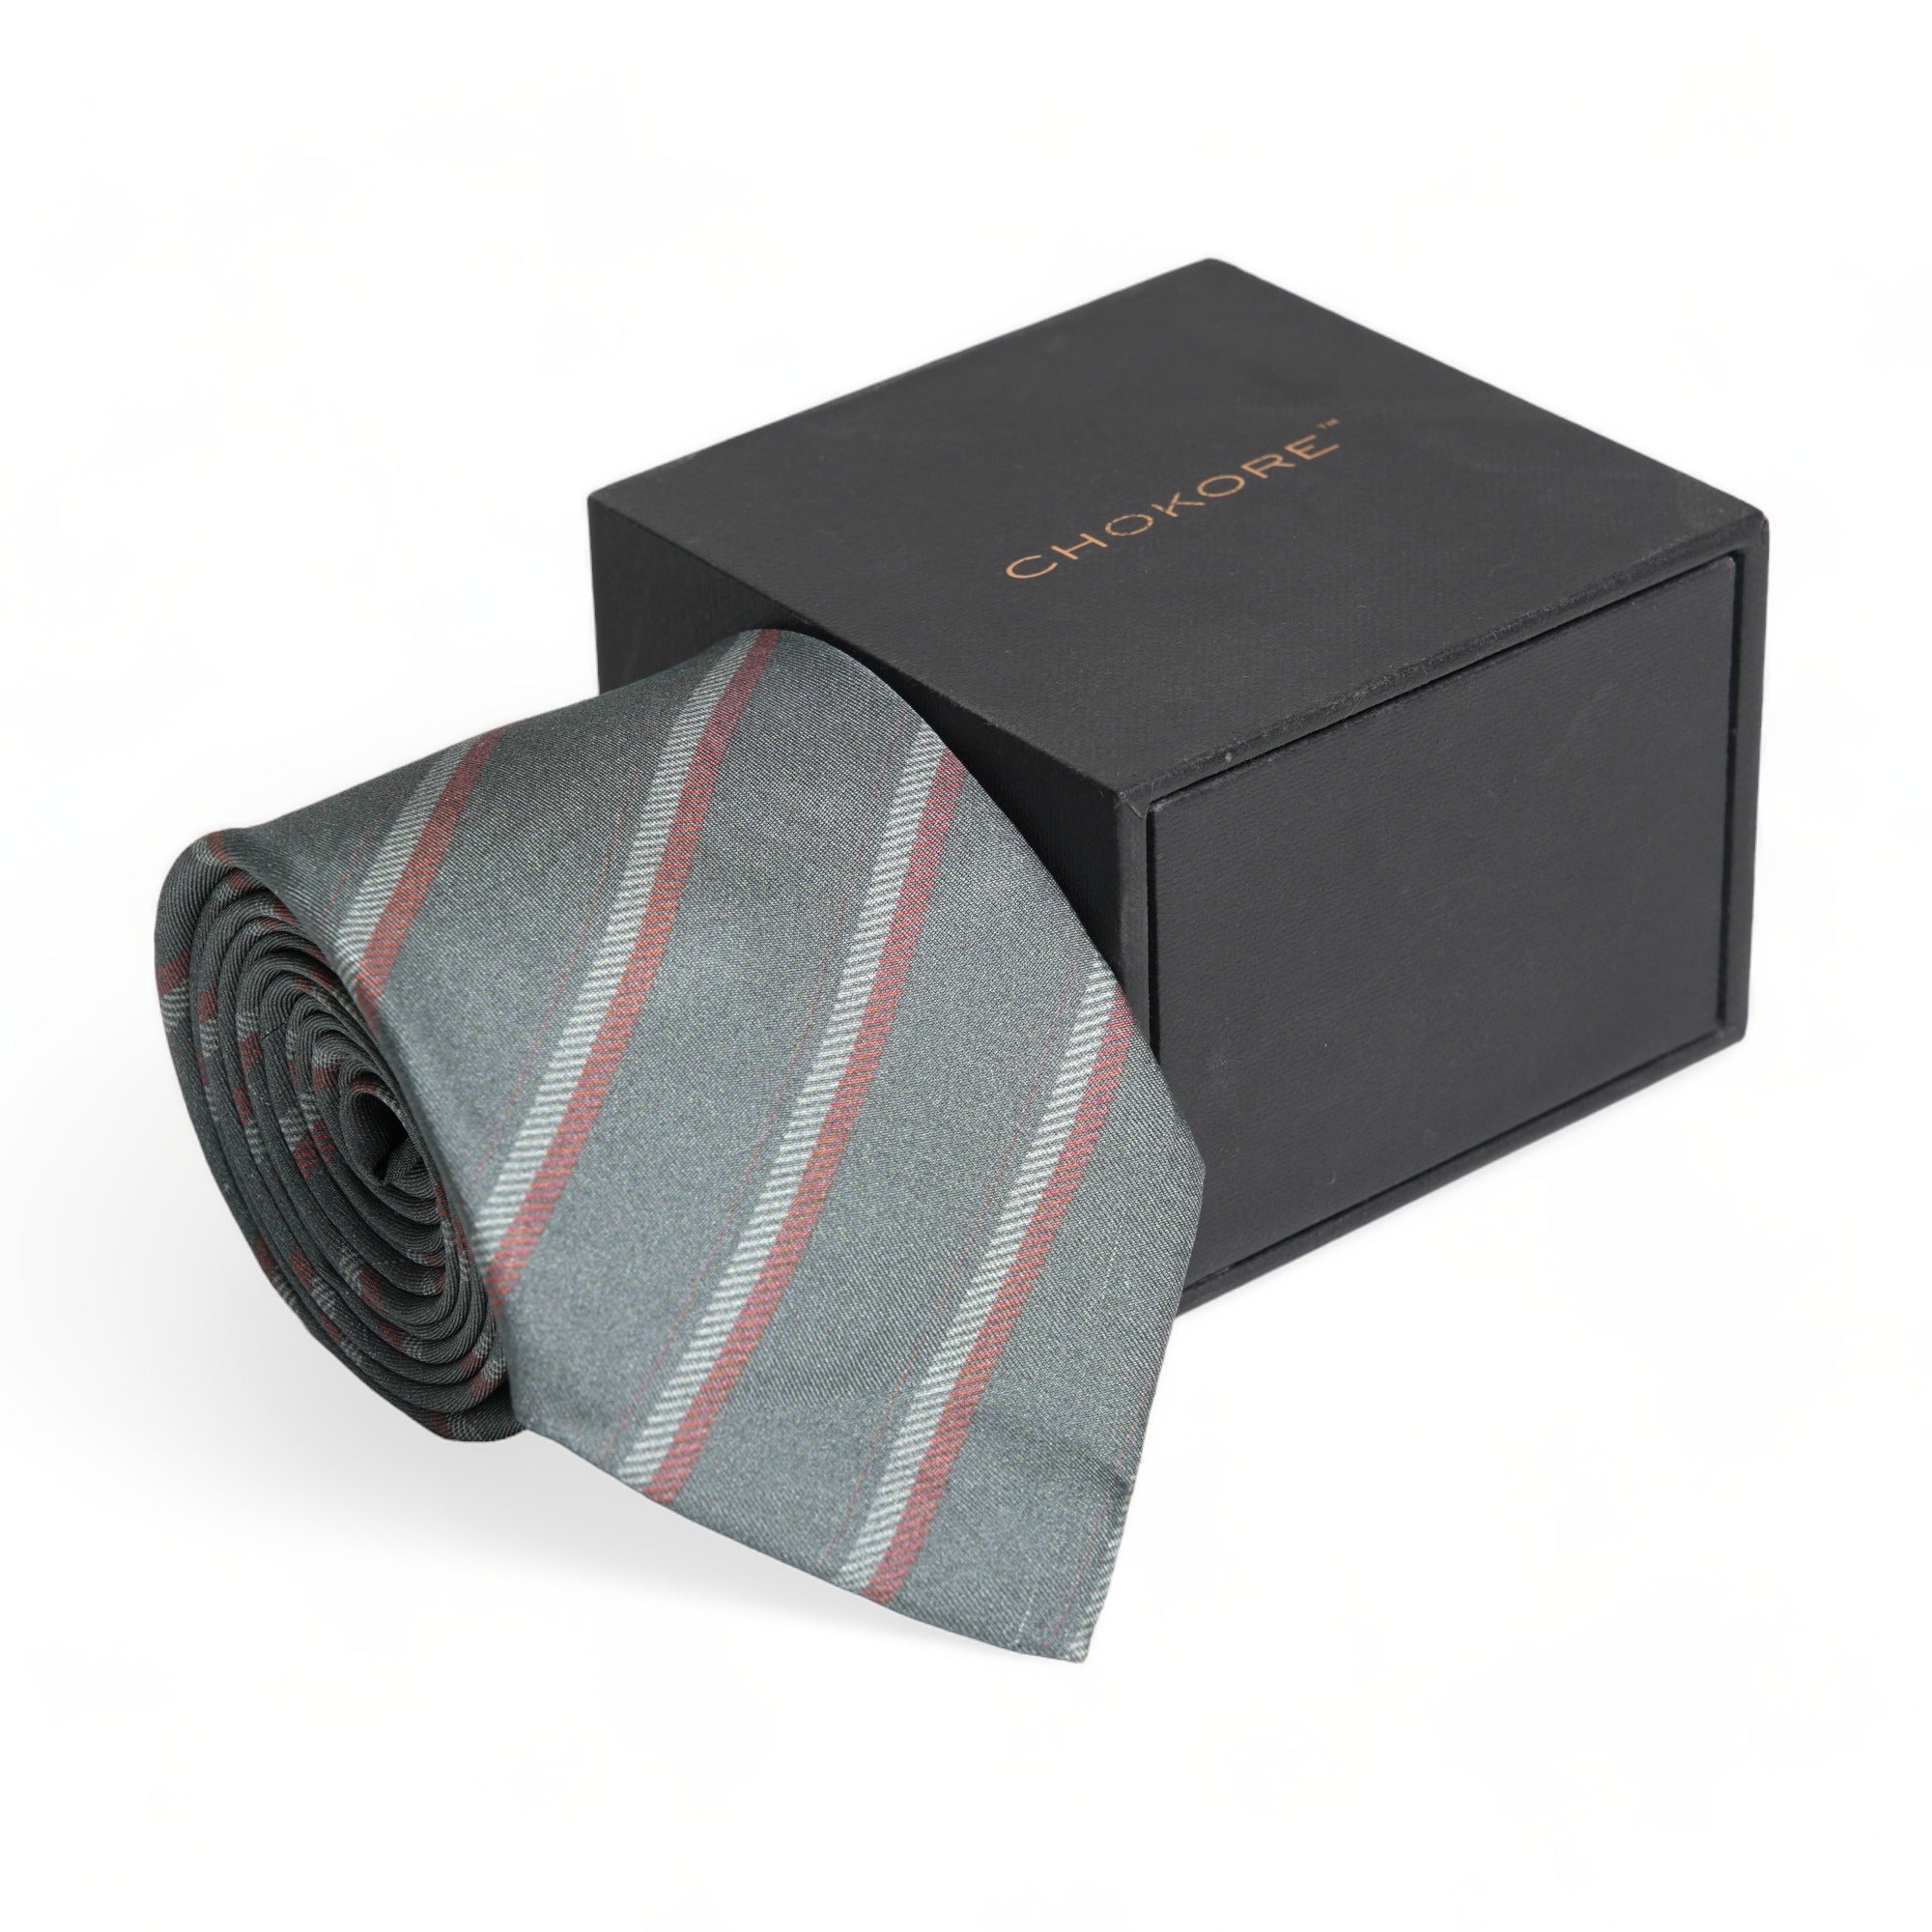 Chokore Gray Striped Silk Necktie - Plaids Range